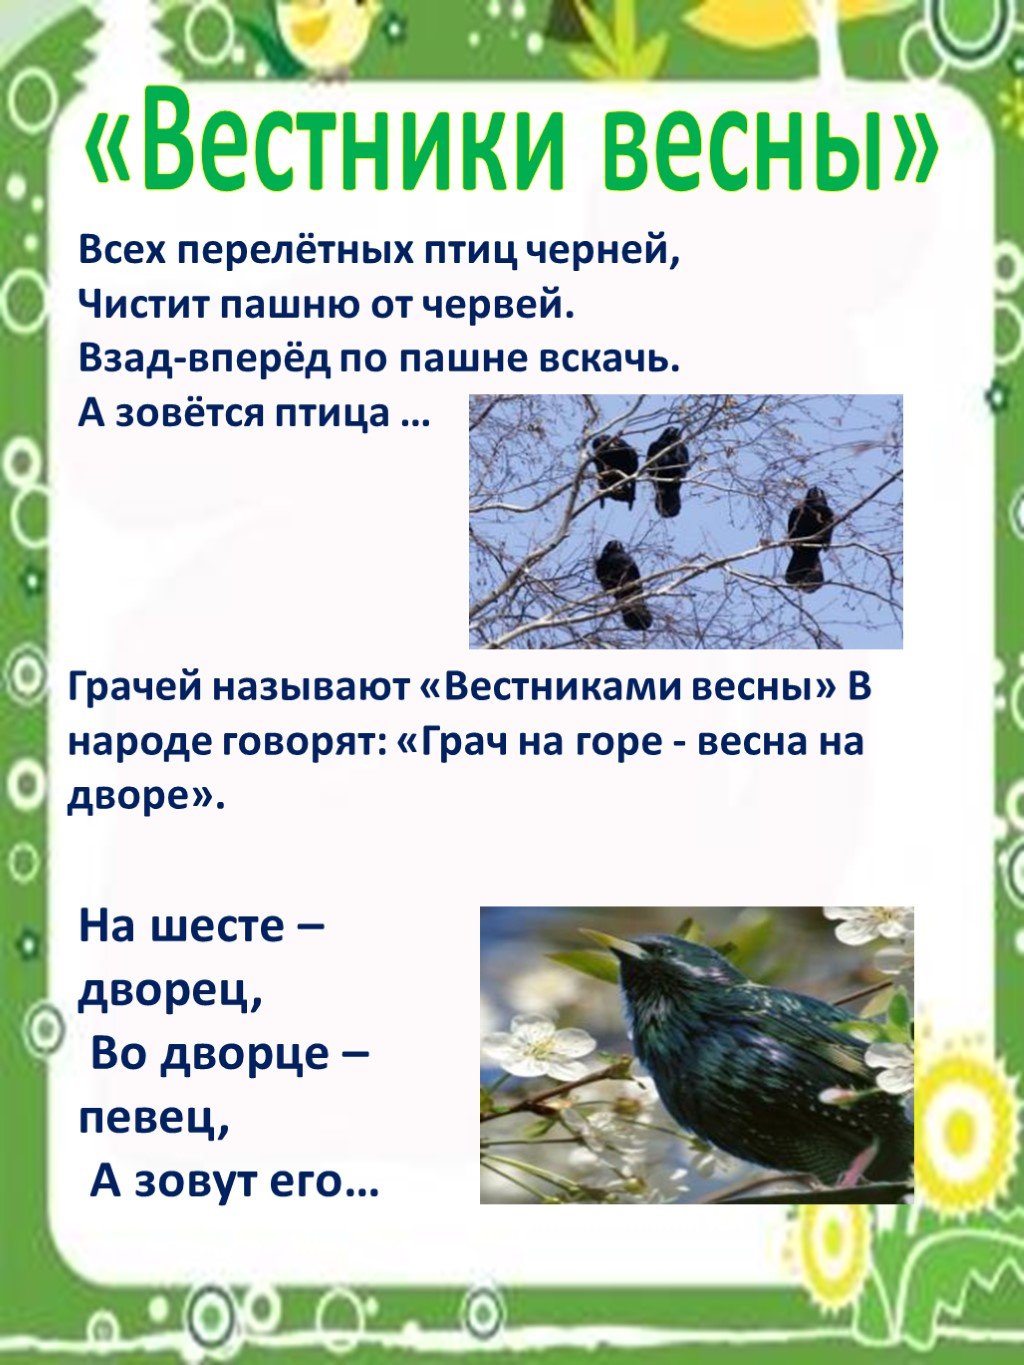 Сведения о птицах для детей весной